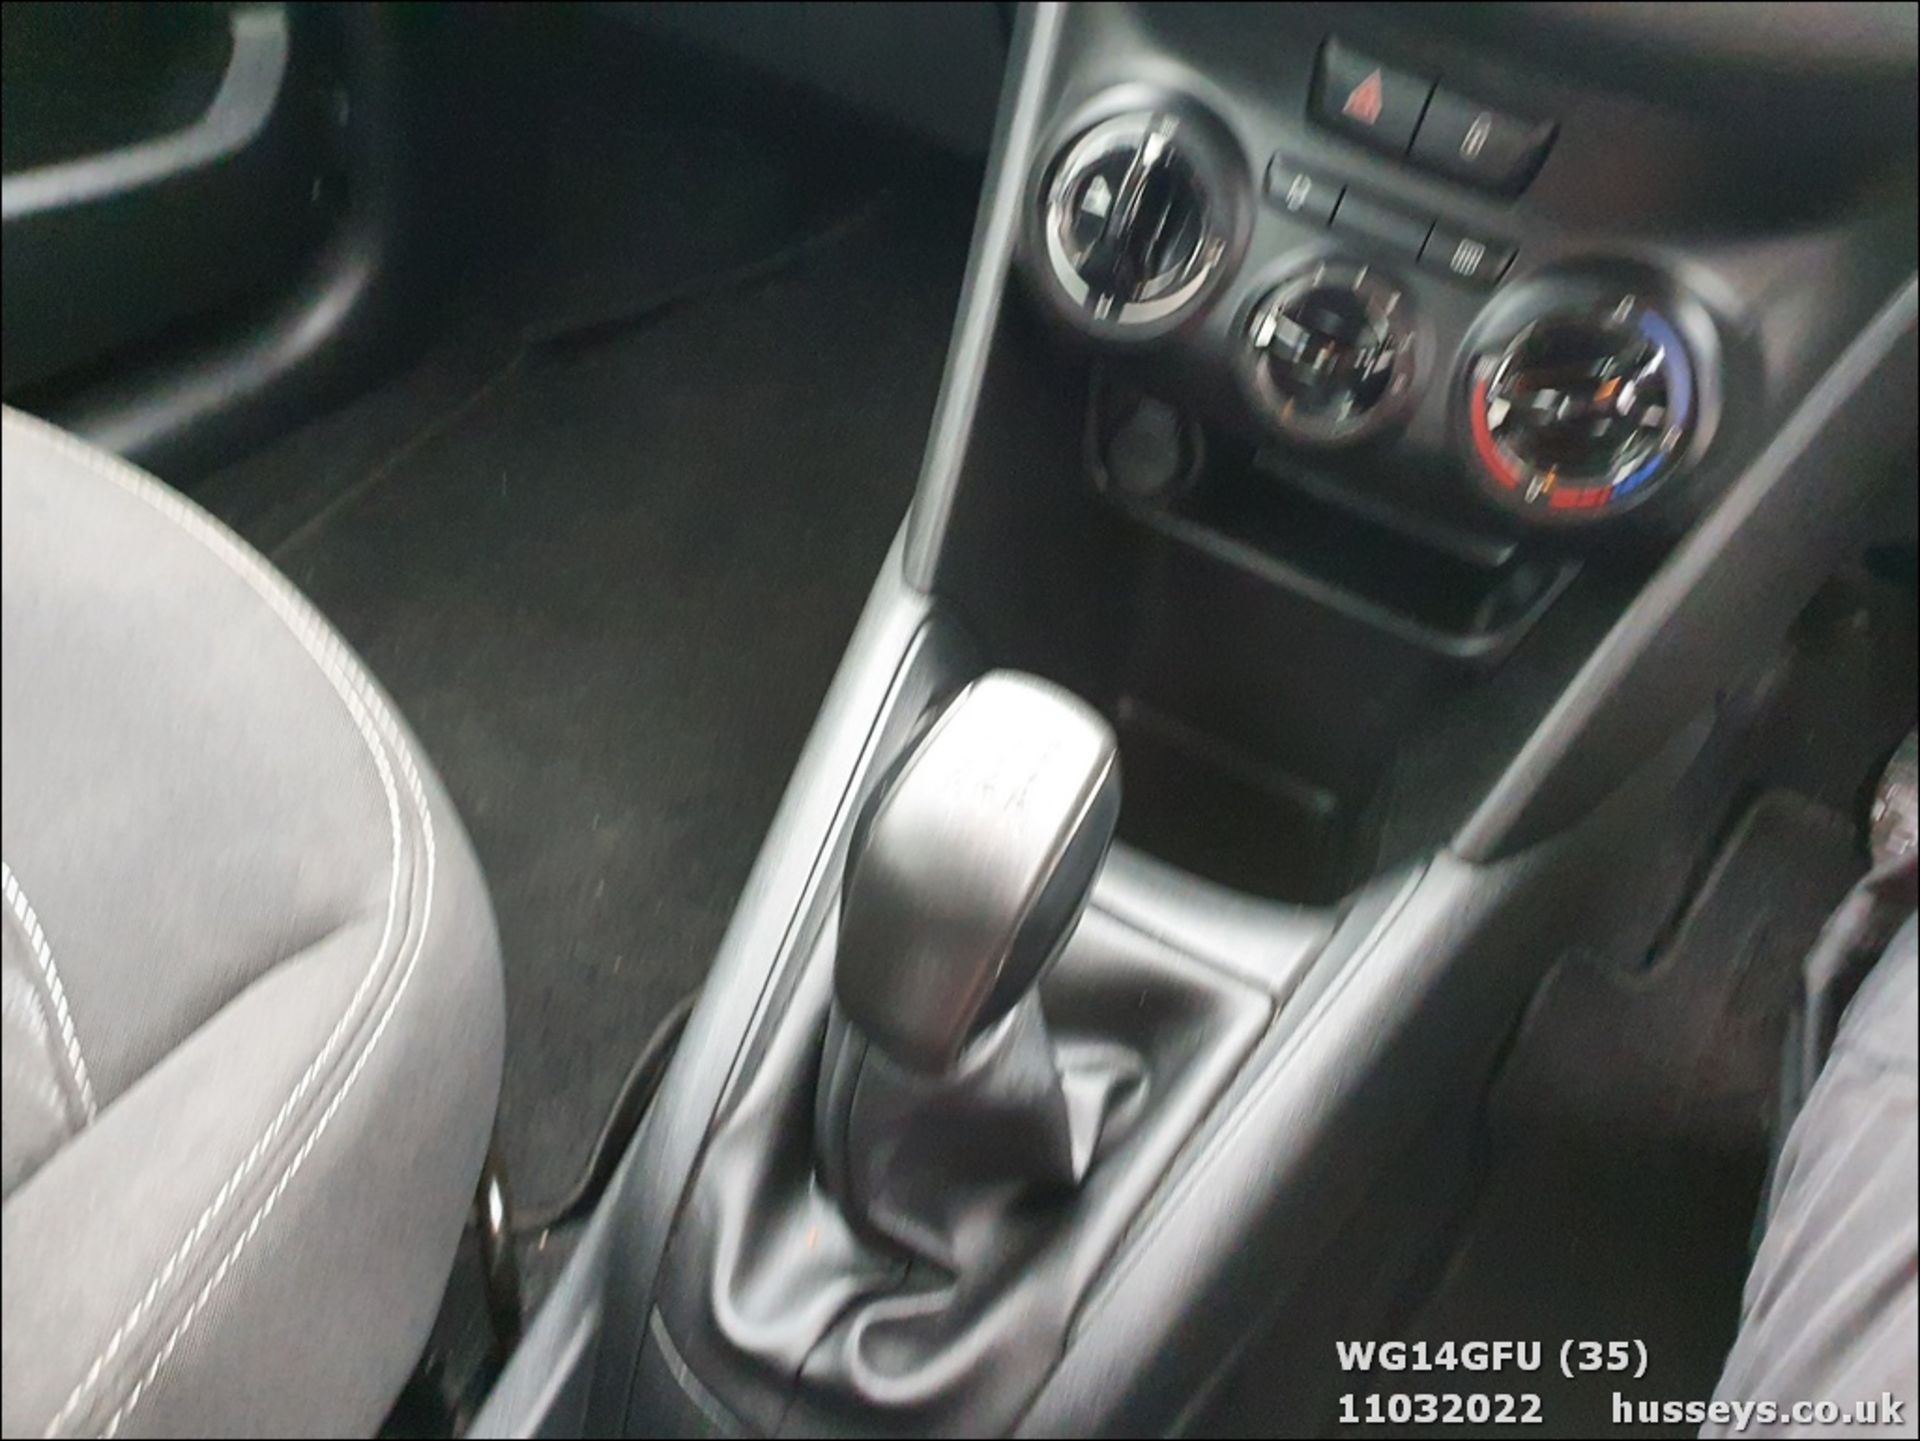 14/14 PEUGEOT 208 ACCESS - 999cc 5dr Hatchback (Black, 72k) - Image 35 of 38